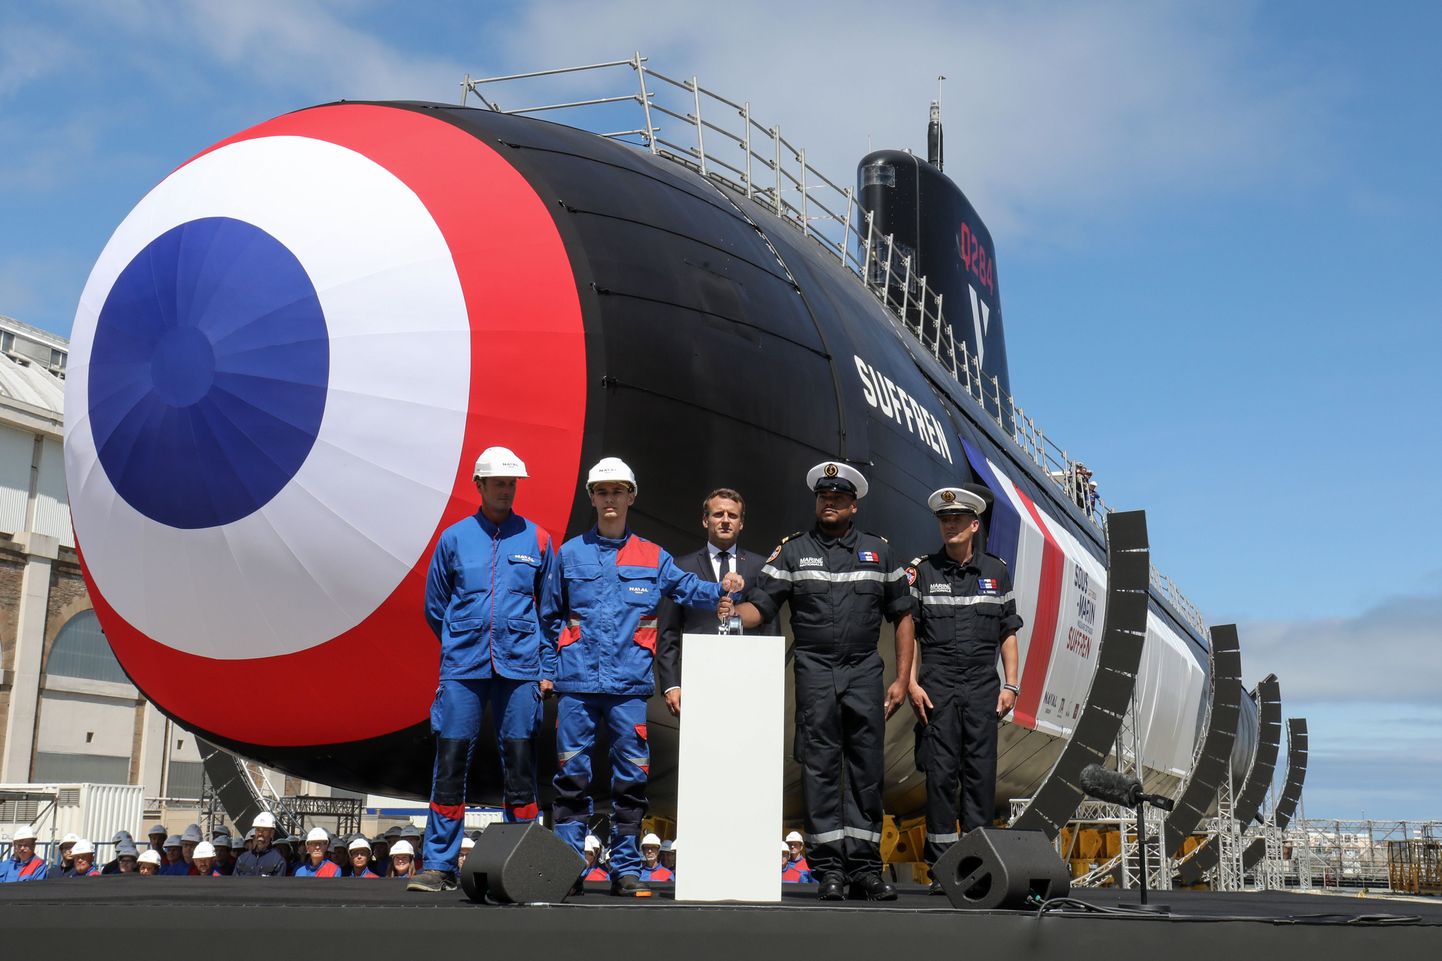 Prantsuse president Emmanuel Macron lasi vette tuumajõul töötava uue põlvkonna ründeallveelaeva Suffren.